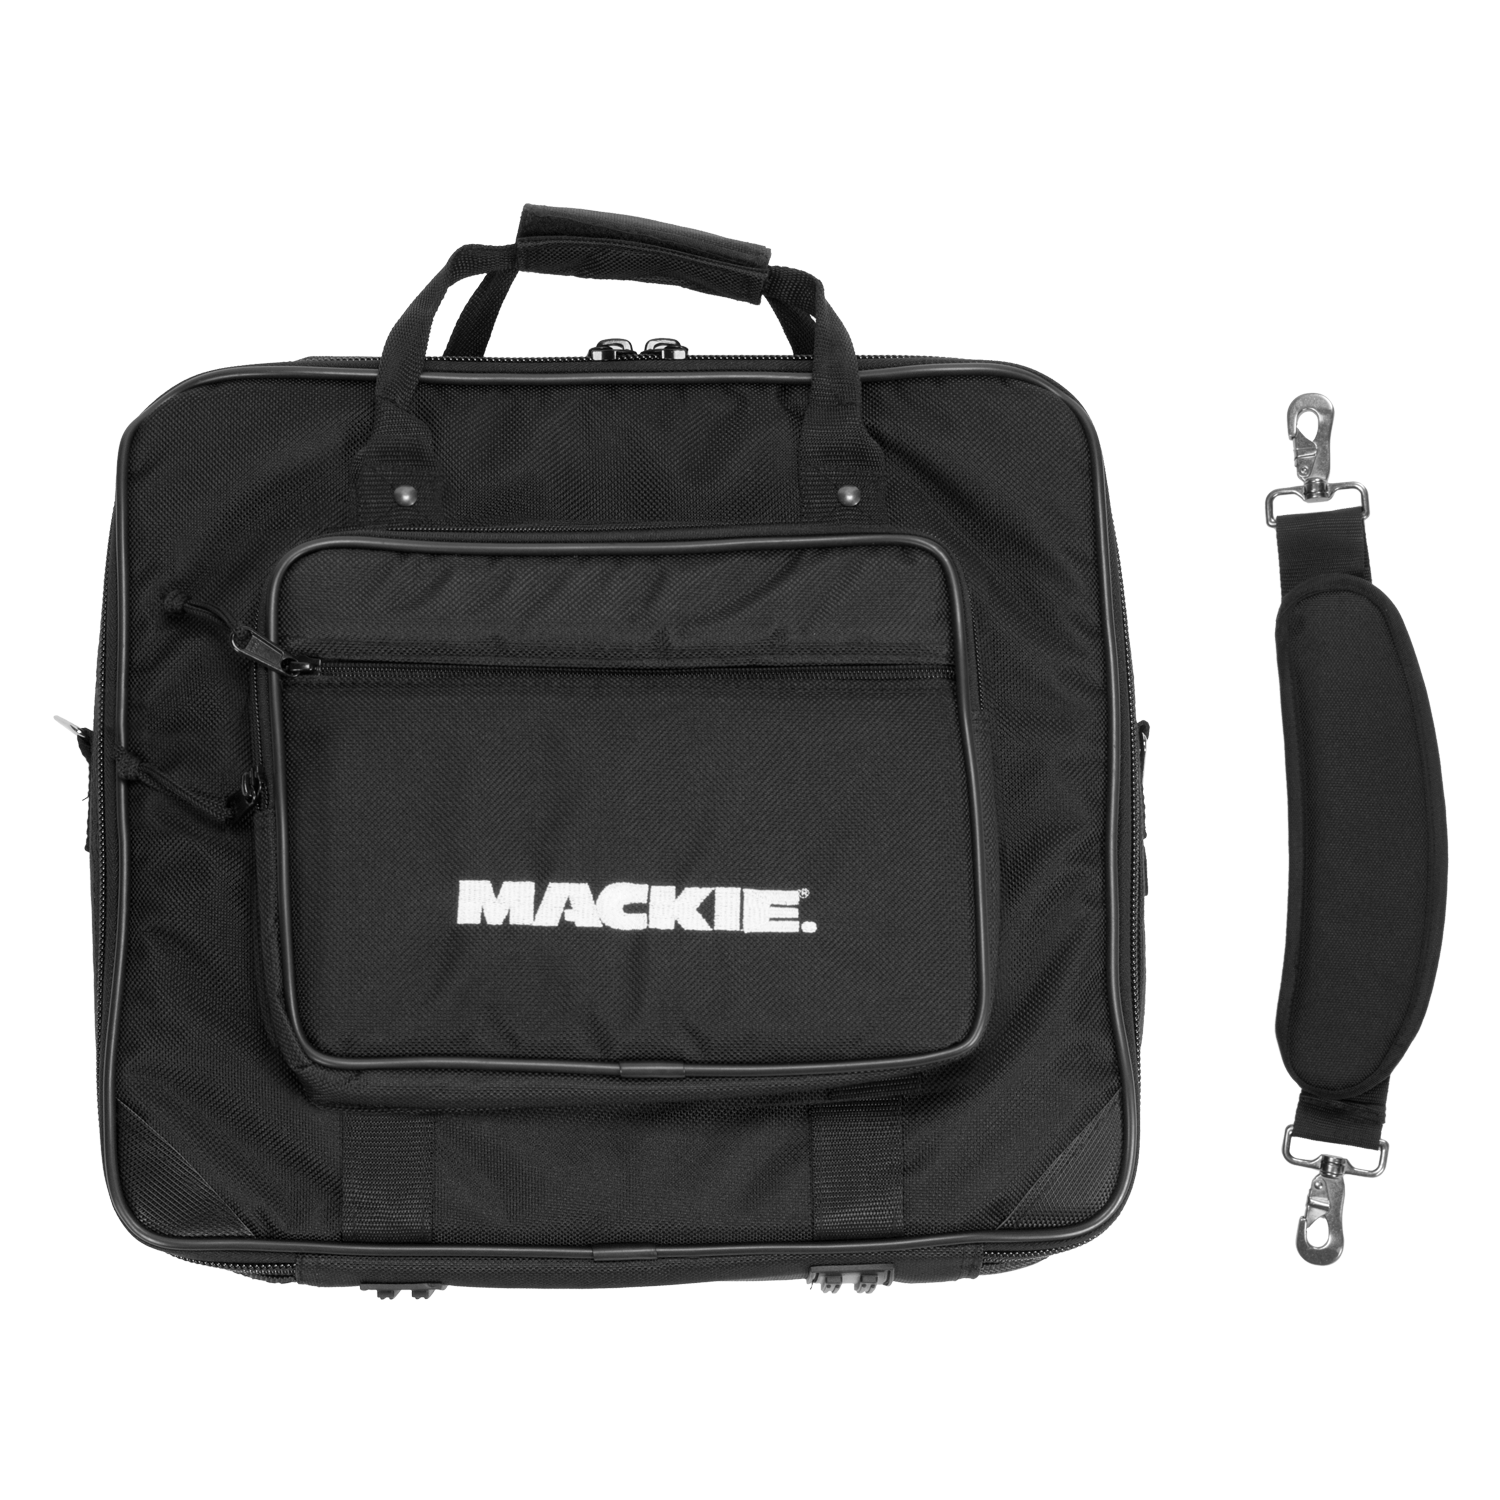 Mackie 1402VLZ4 Mixer Bag